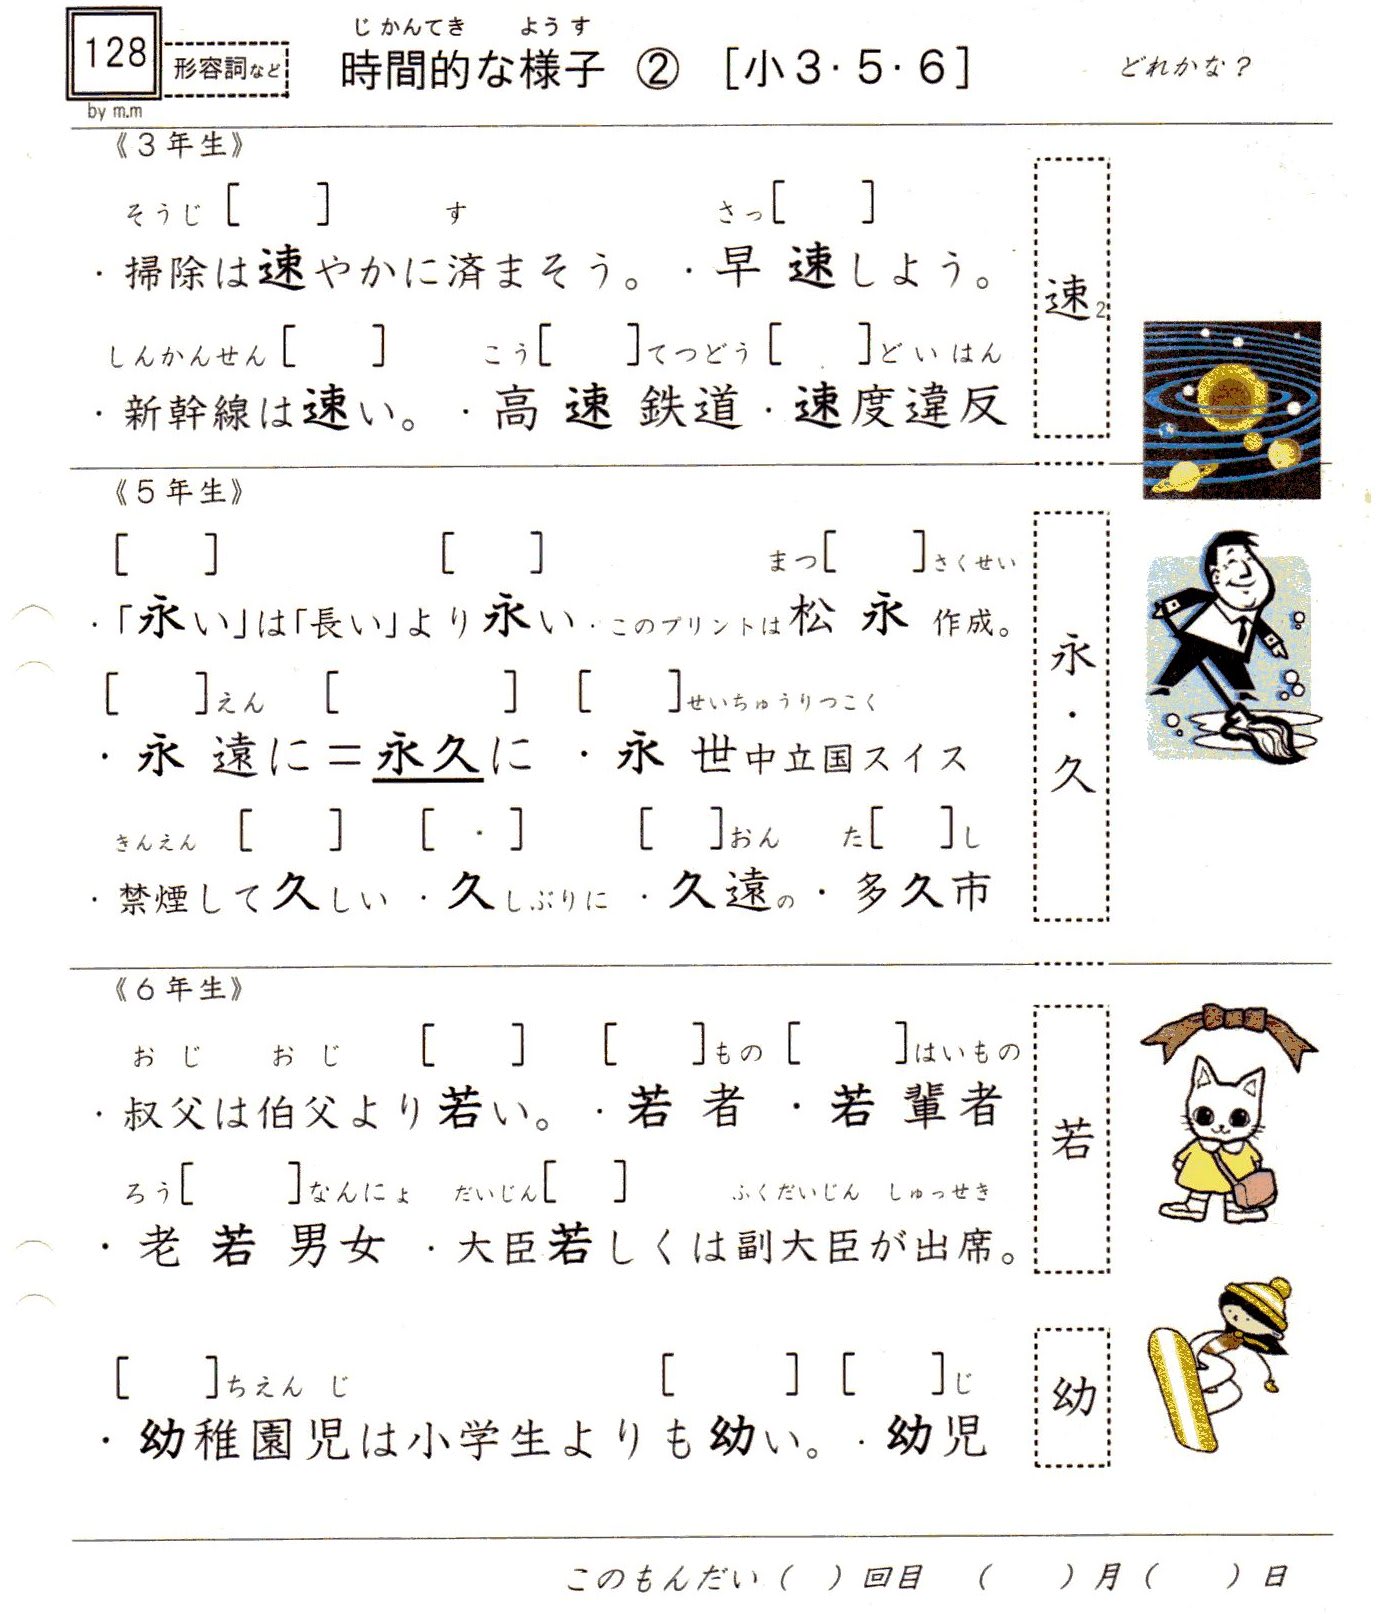 小学校漢字の読み 128 時間的な様子 3 5 6年 時間感覚は民族や個人により大違い やおよろずの神々の棲む国で